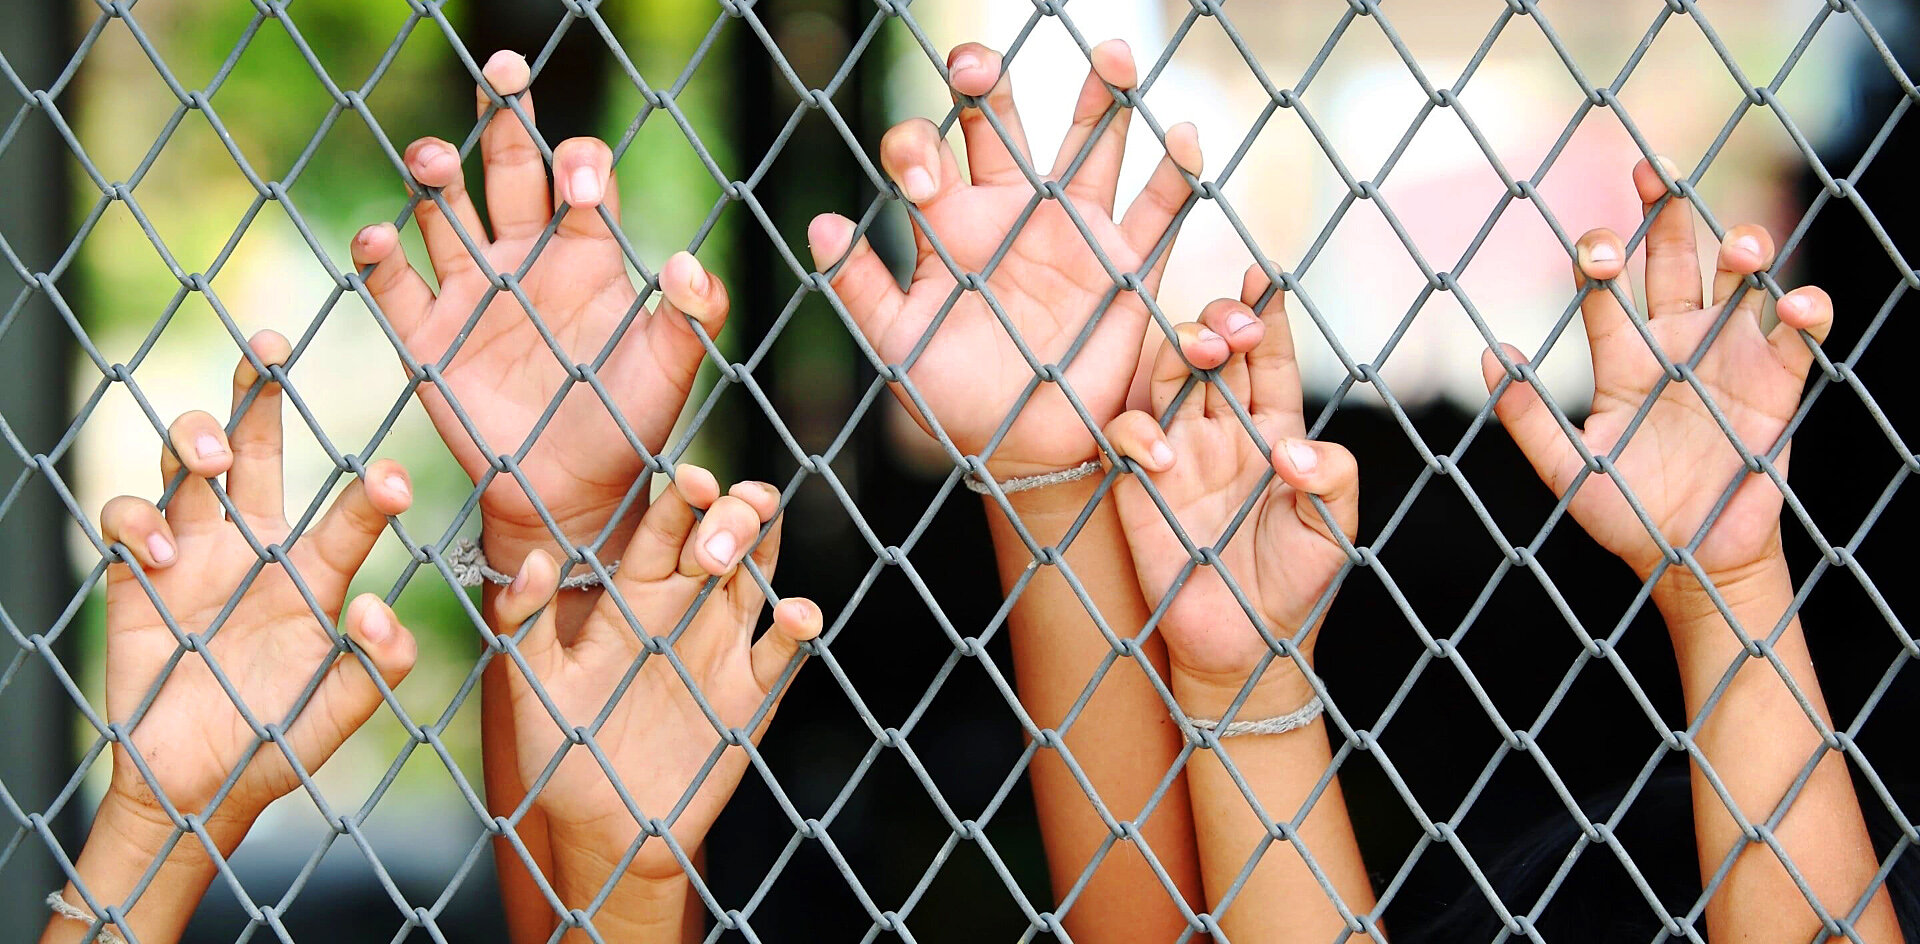 Запрет посещений и плохая еда: родители жалуются на детские лагеря